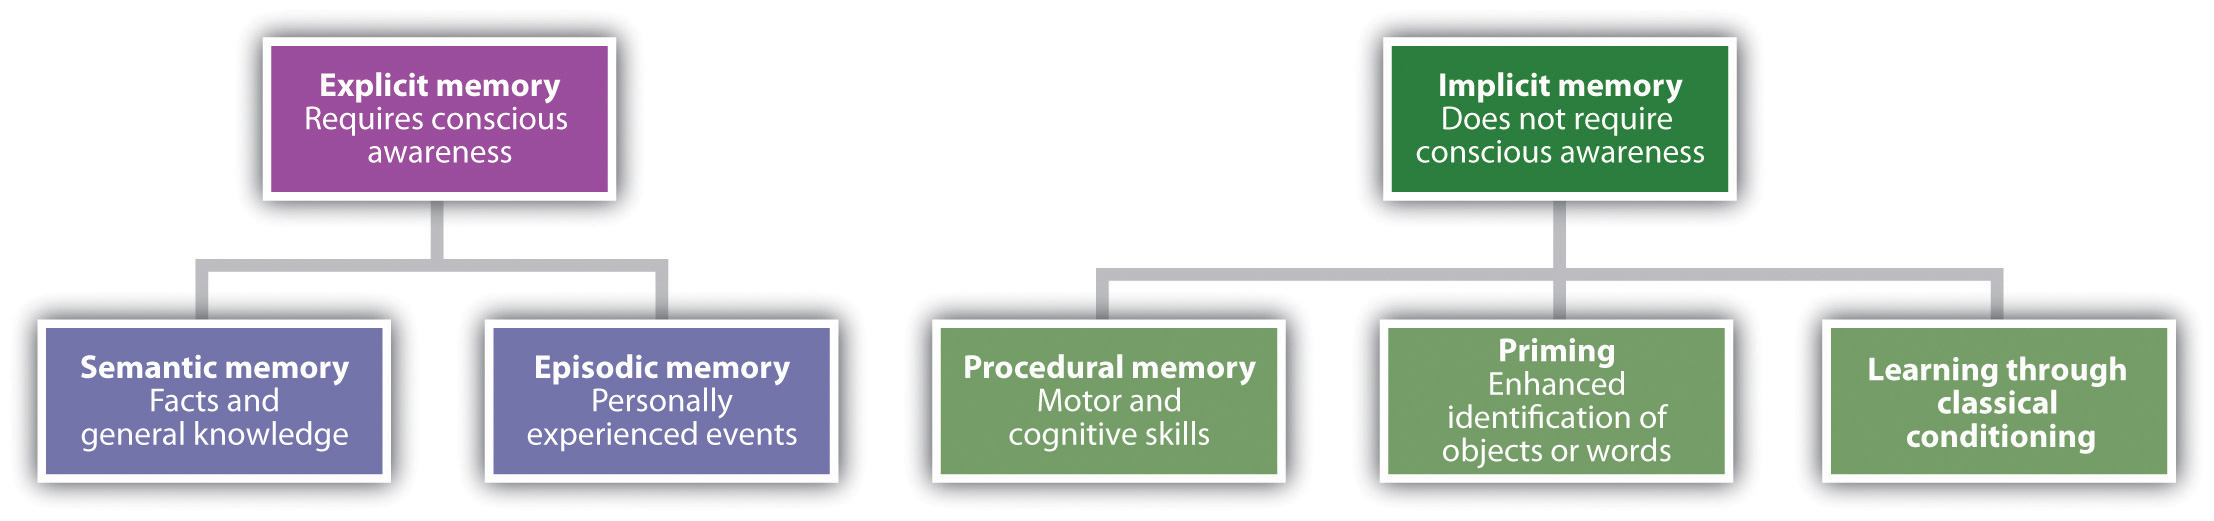 Memoria explícita: semántica y episódica. Memoria implícita: memoria procedimental, cebado y condicionamiento clásico.